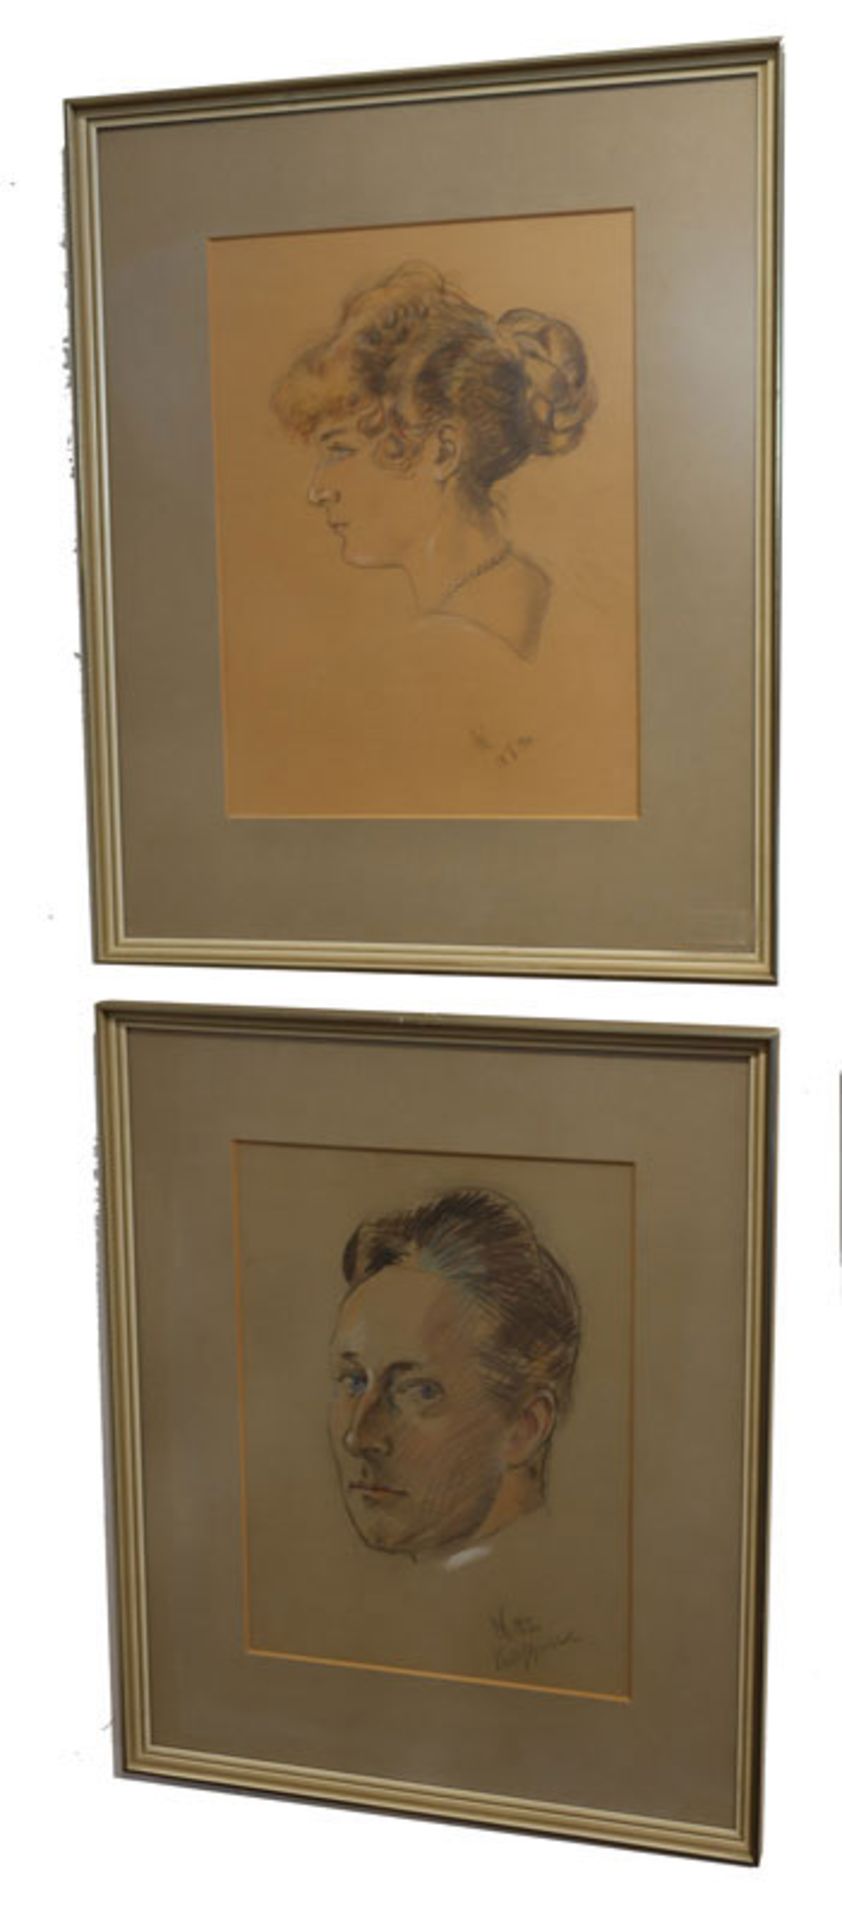 Zeichnung 'Selbstportrait von Wilhelm von Preussen, deutscher Kronprinz 1882 - 1957', rückseitig